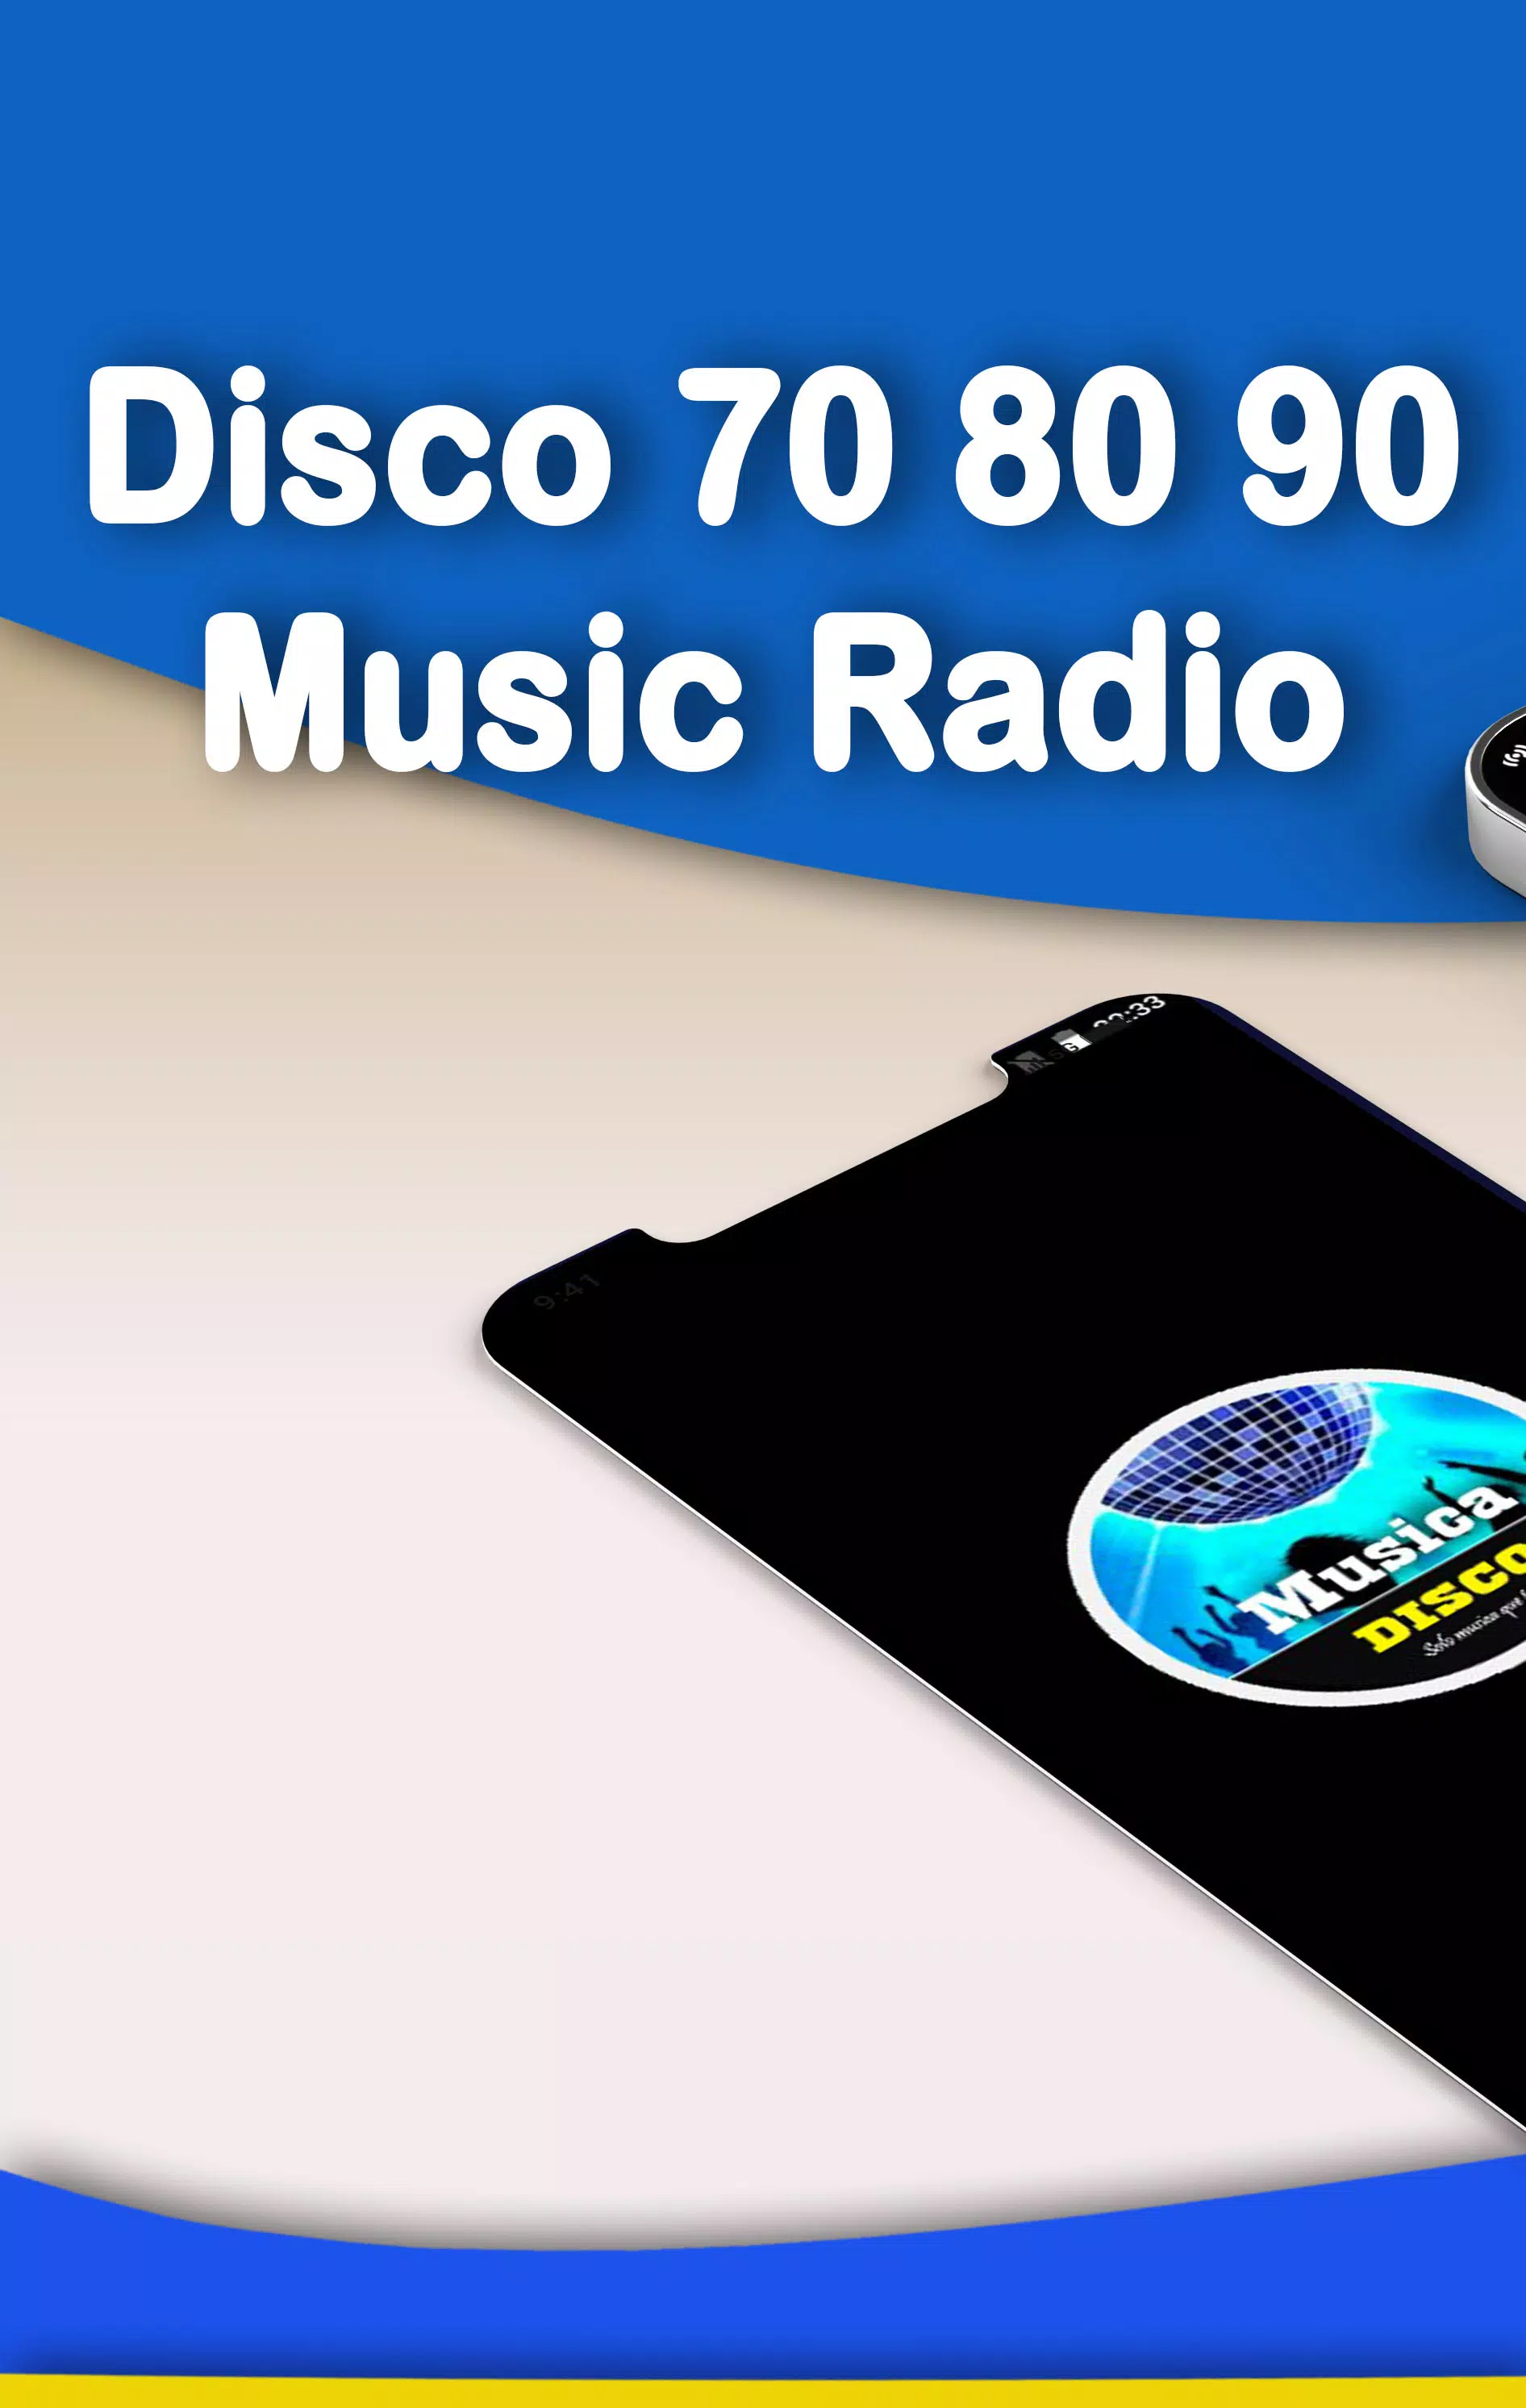 Musique disco 70 80 90 APK pour Android Télécharger